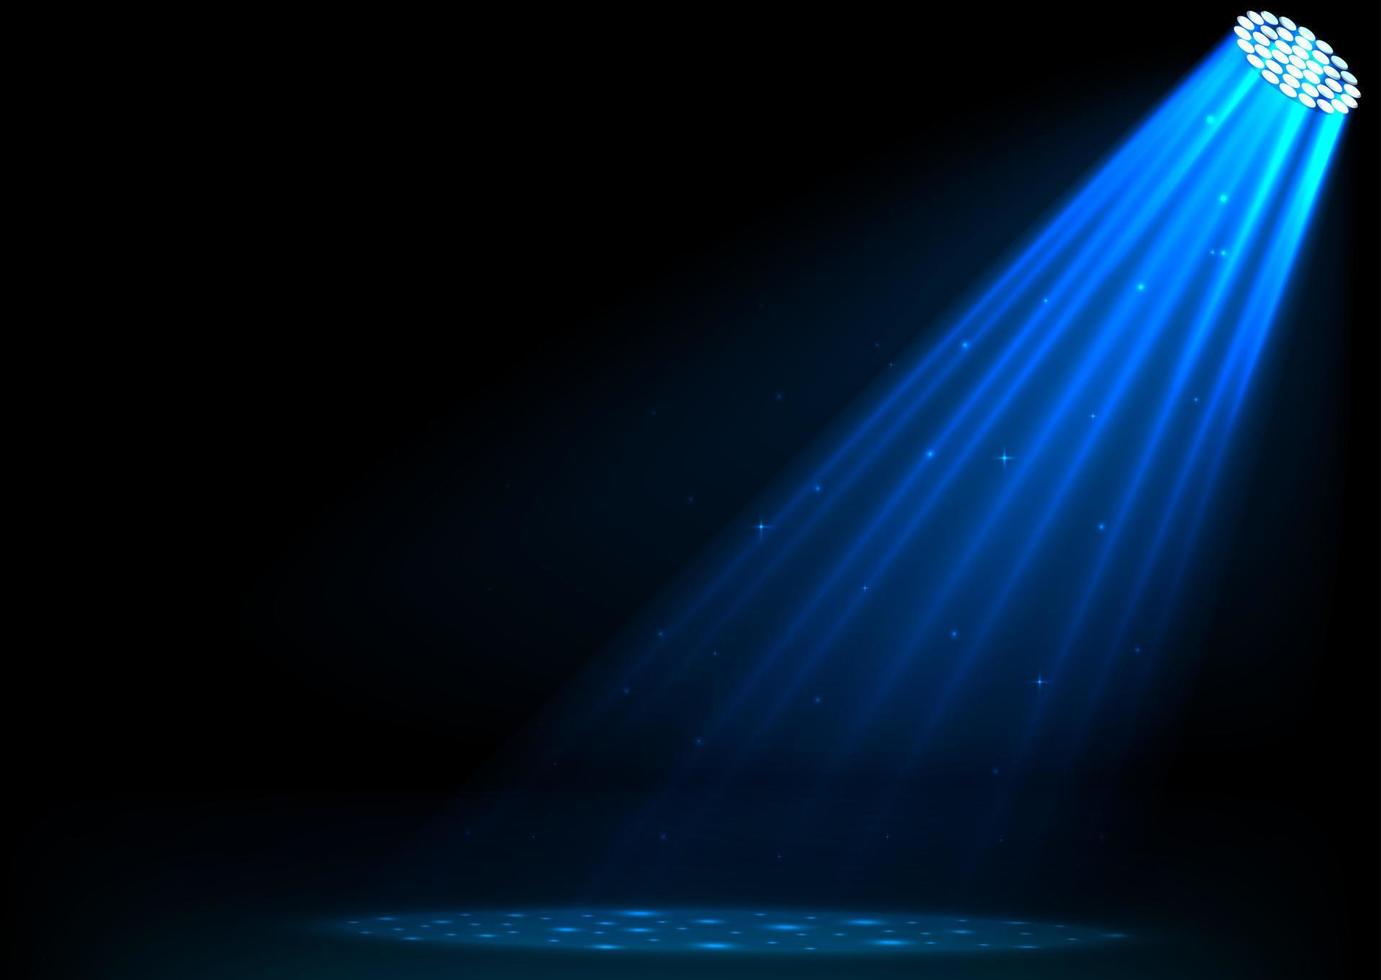 Blue spotlights on dark background vector